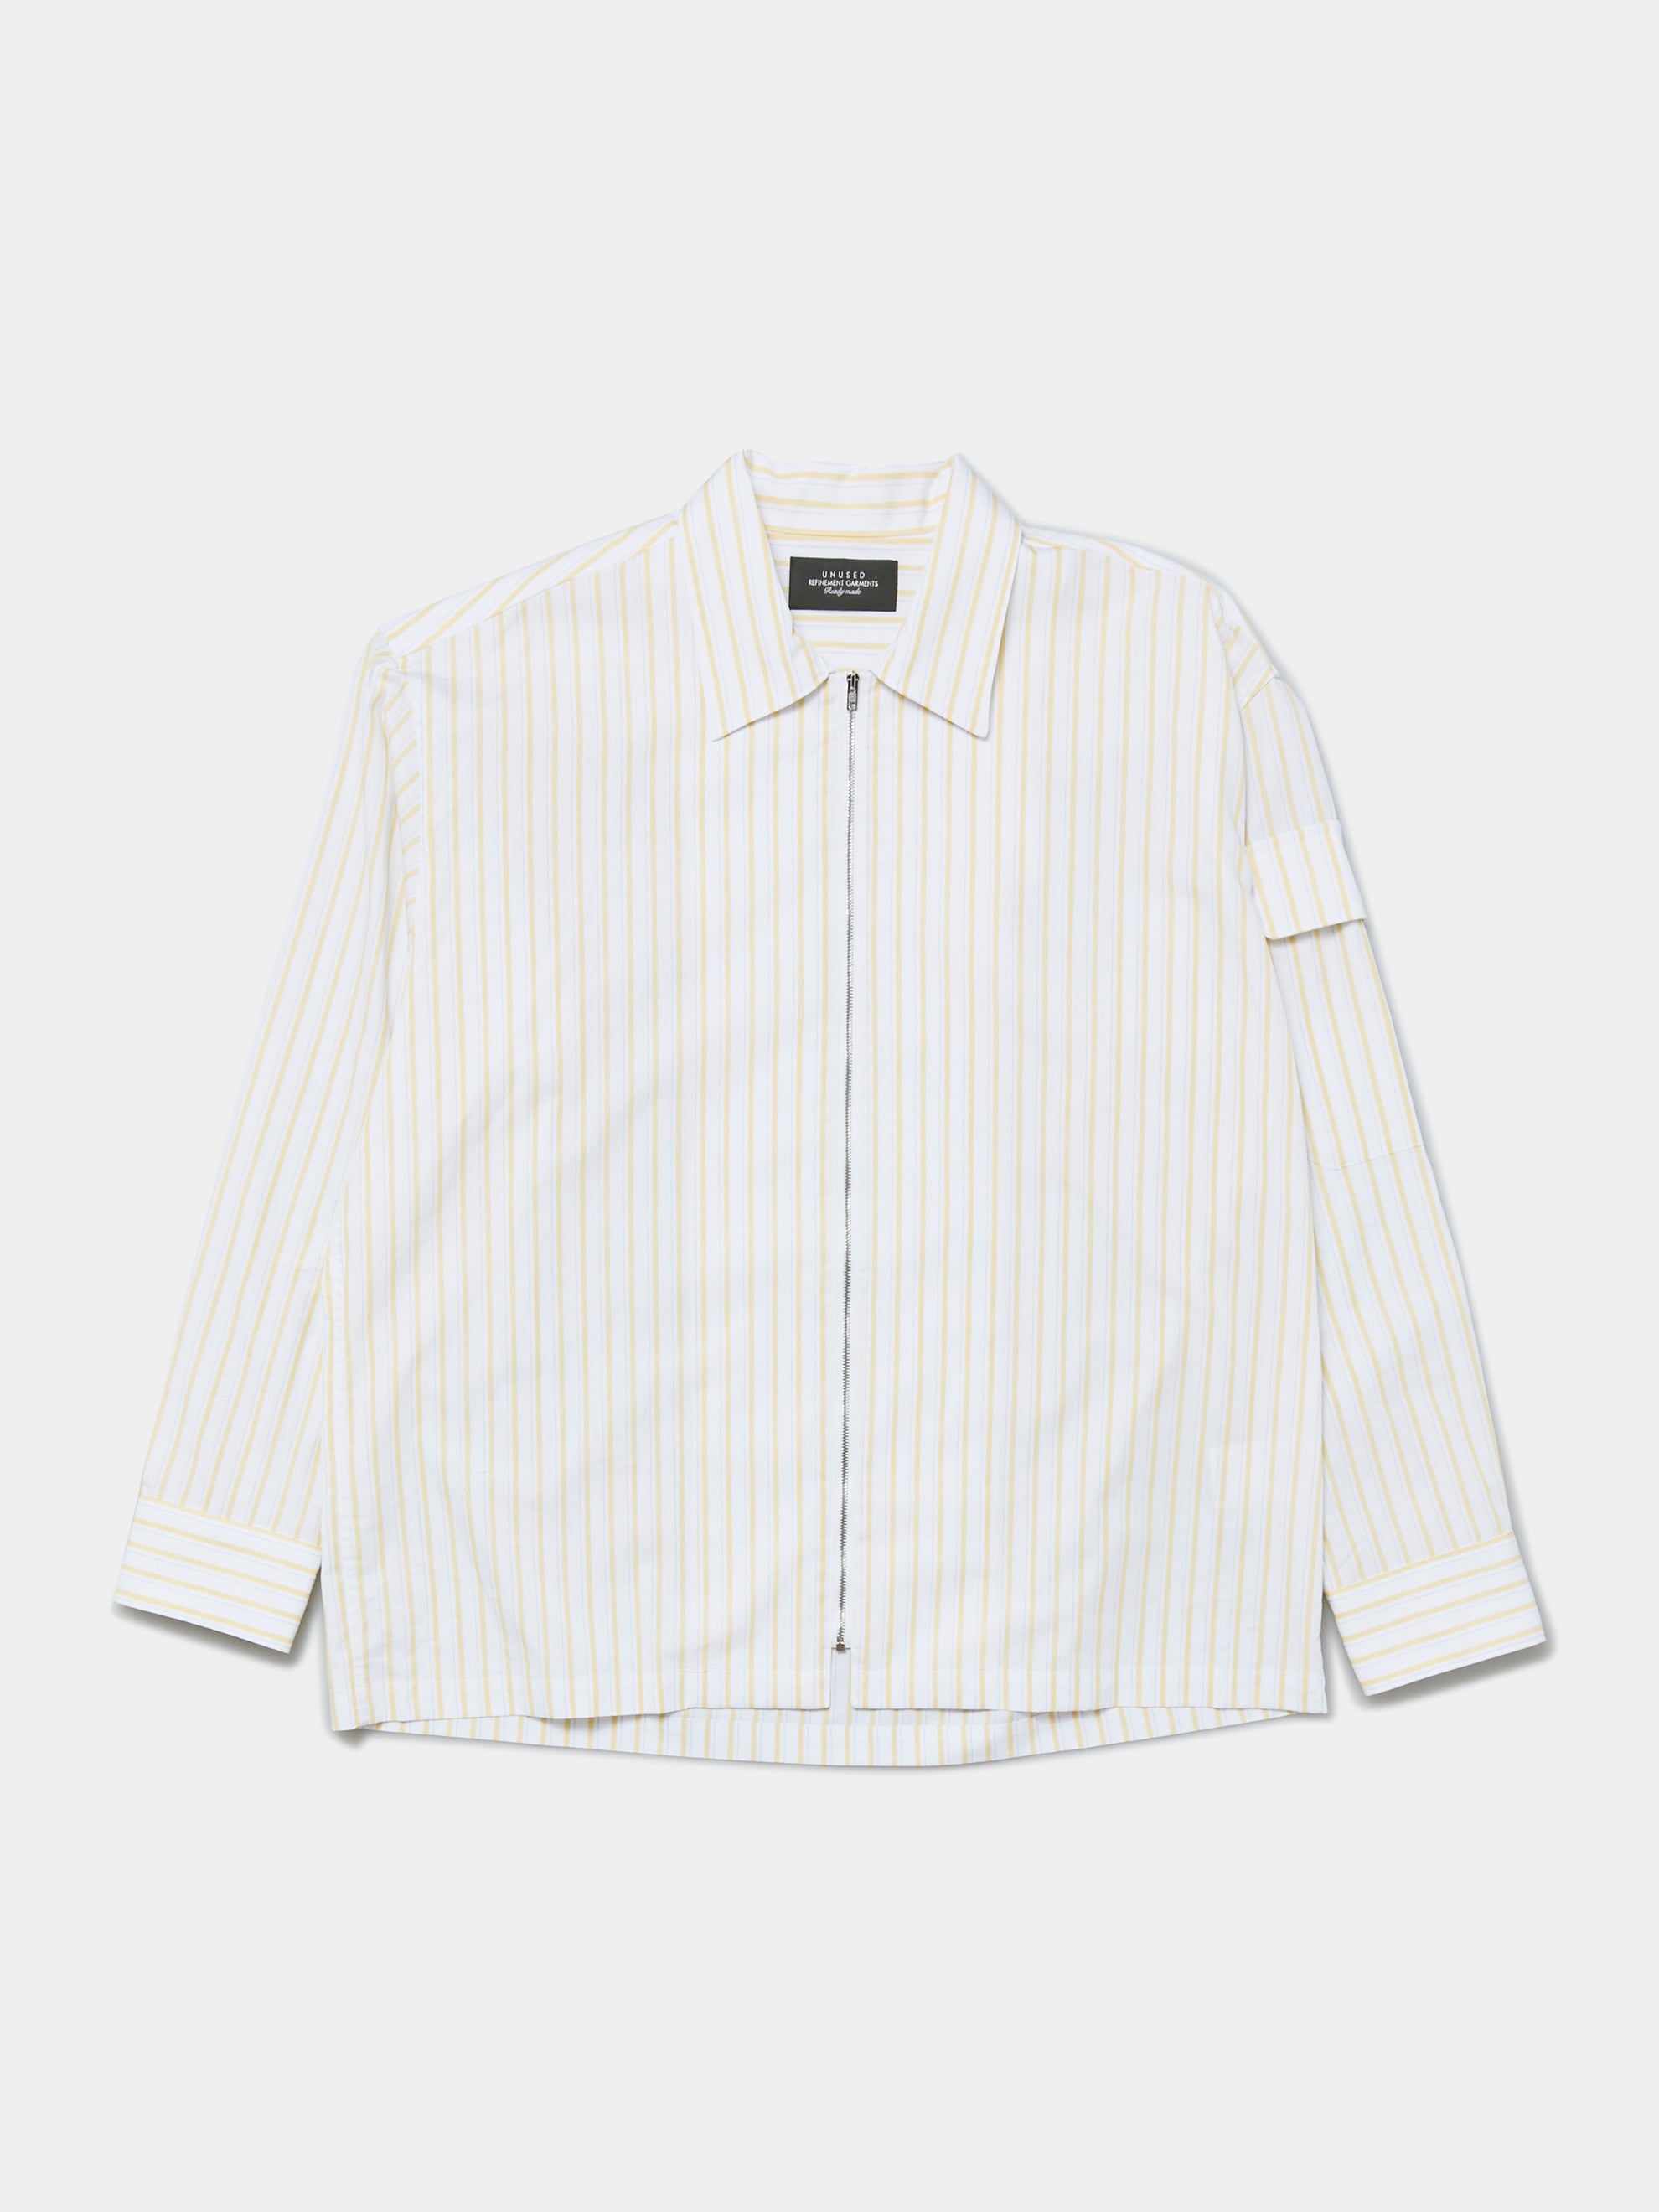 Buy Unused Stripe Zip Shirt Online at UNION LOS ANGELES